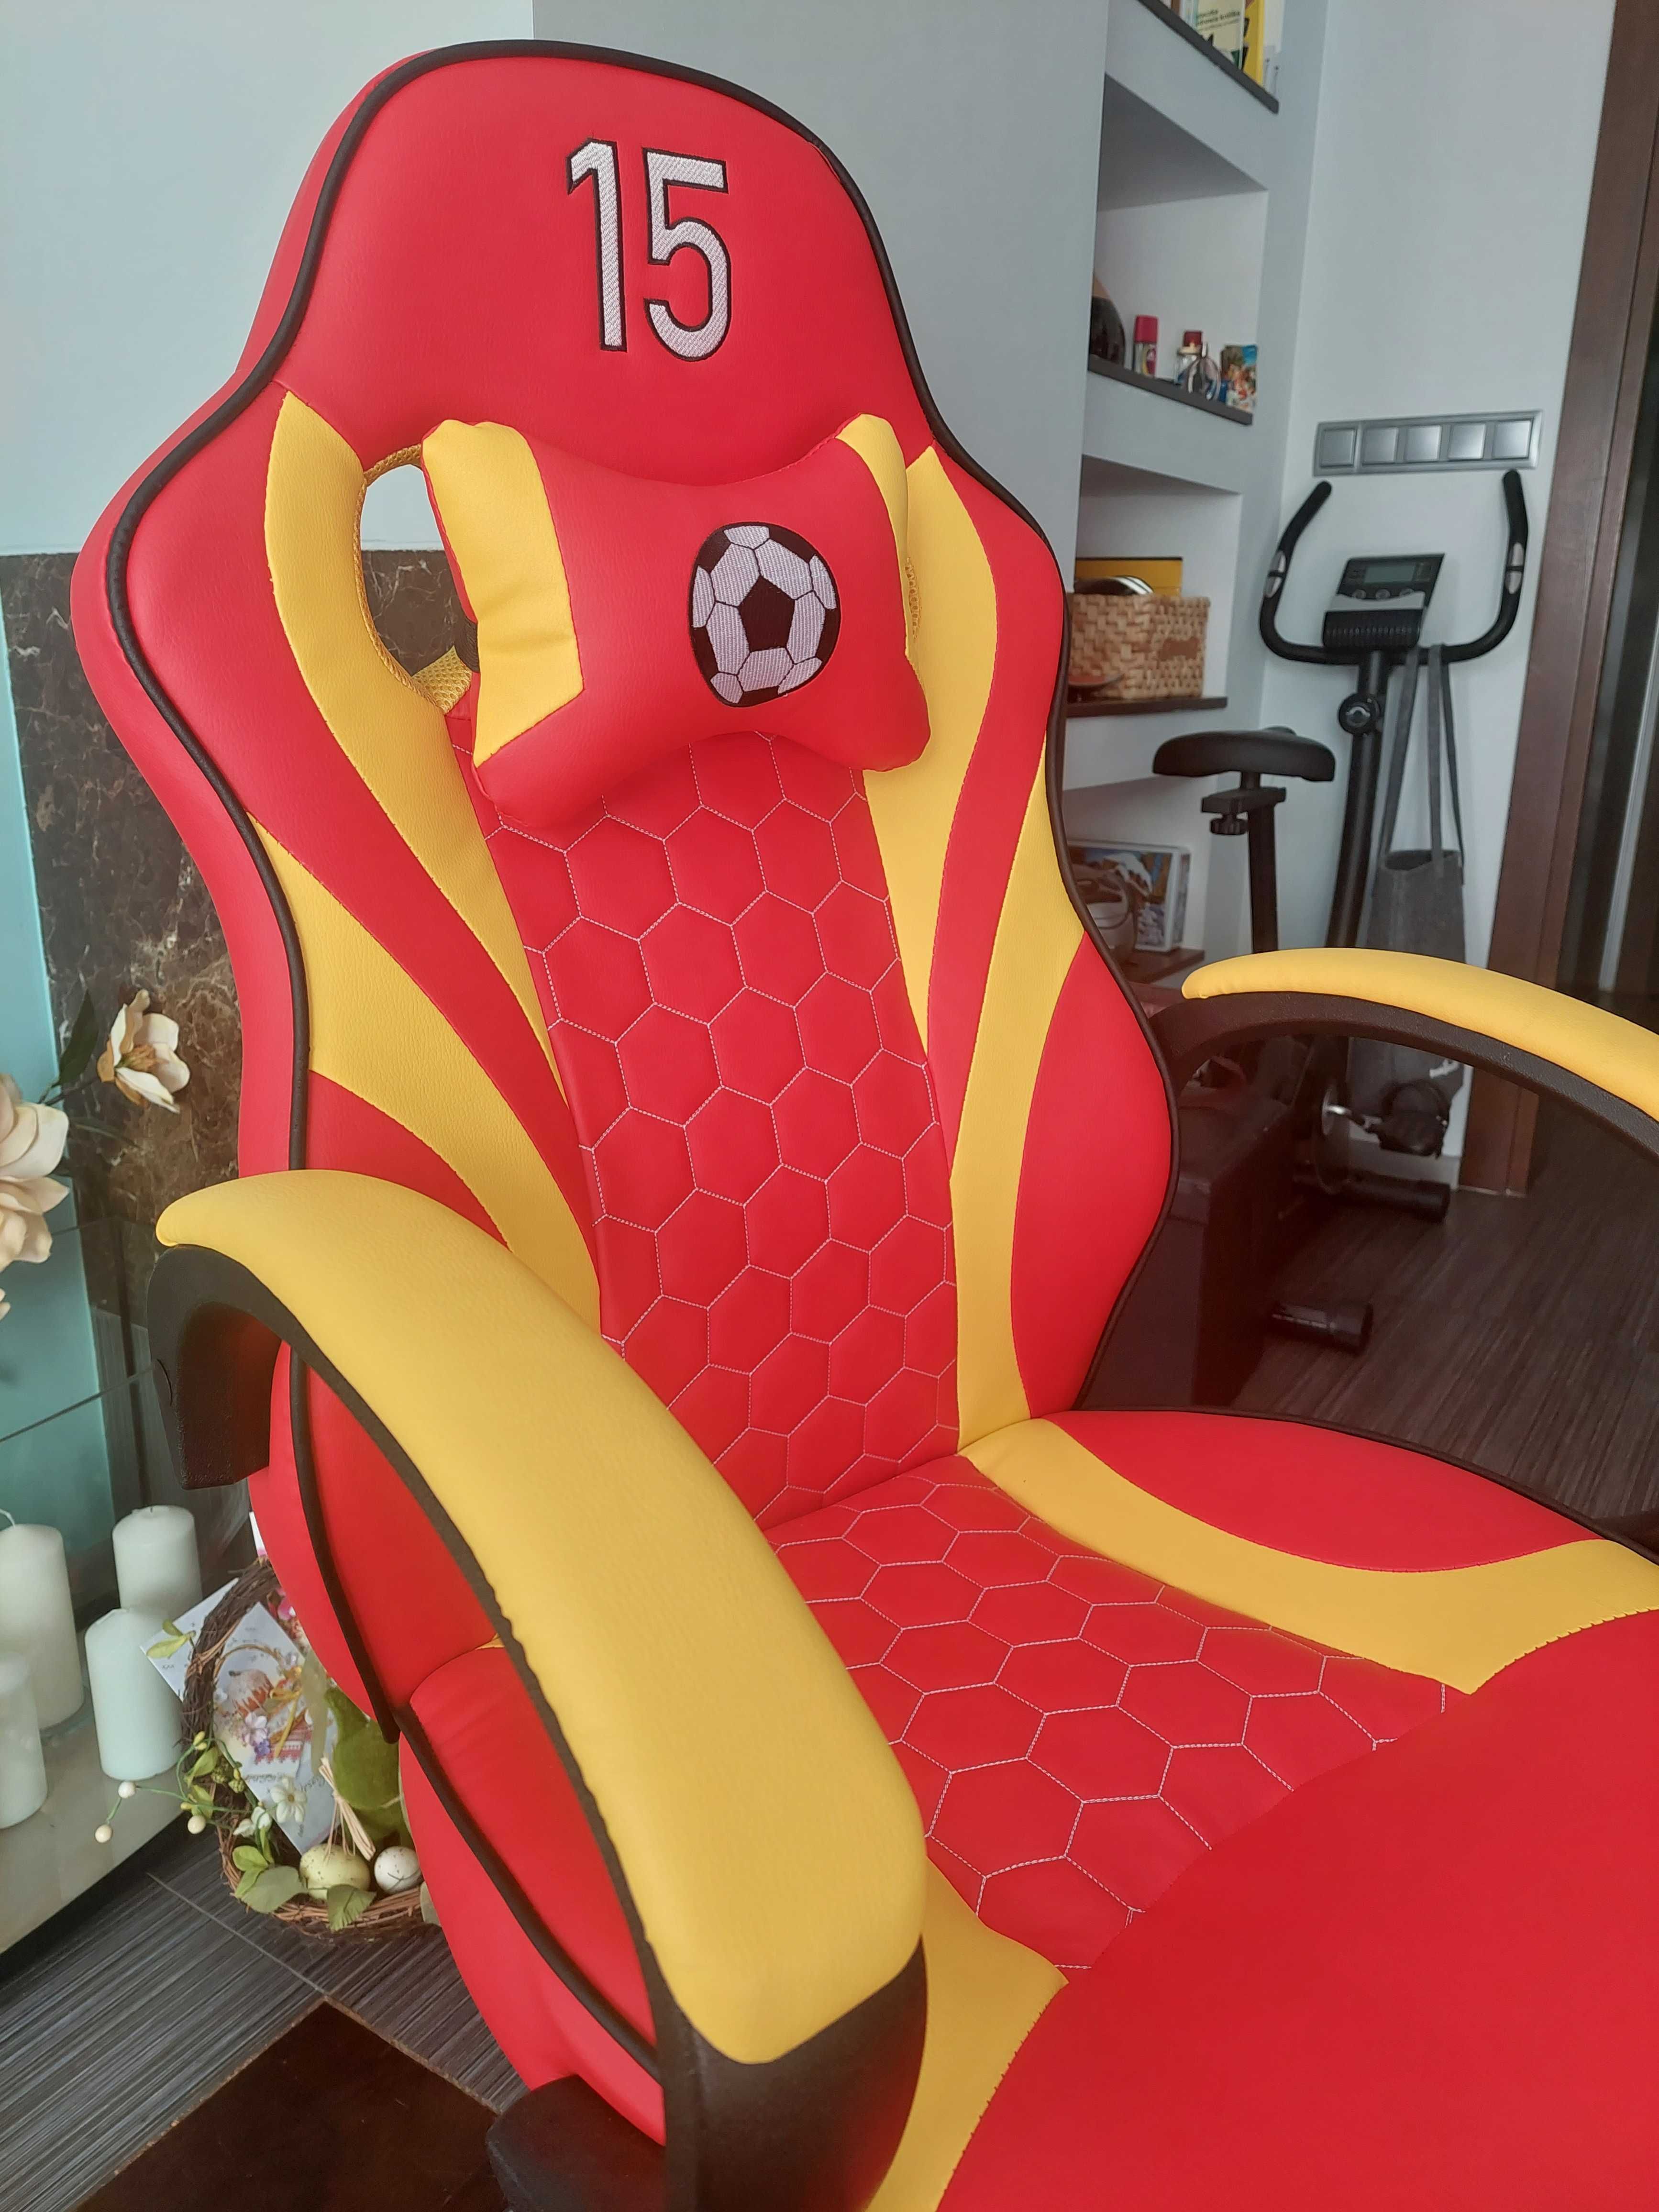 Krzesło gamingowe - nowe - świetny prezent na Dzień Dziecka